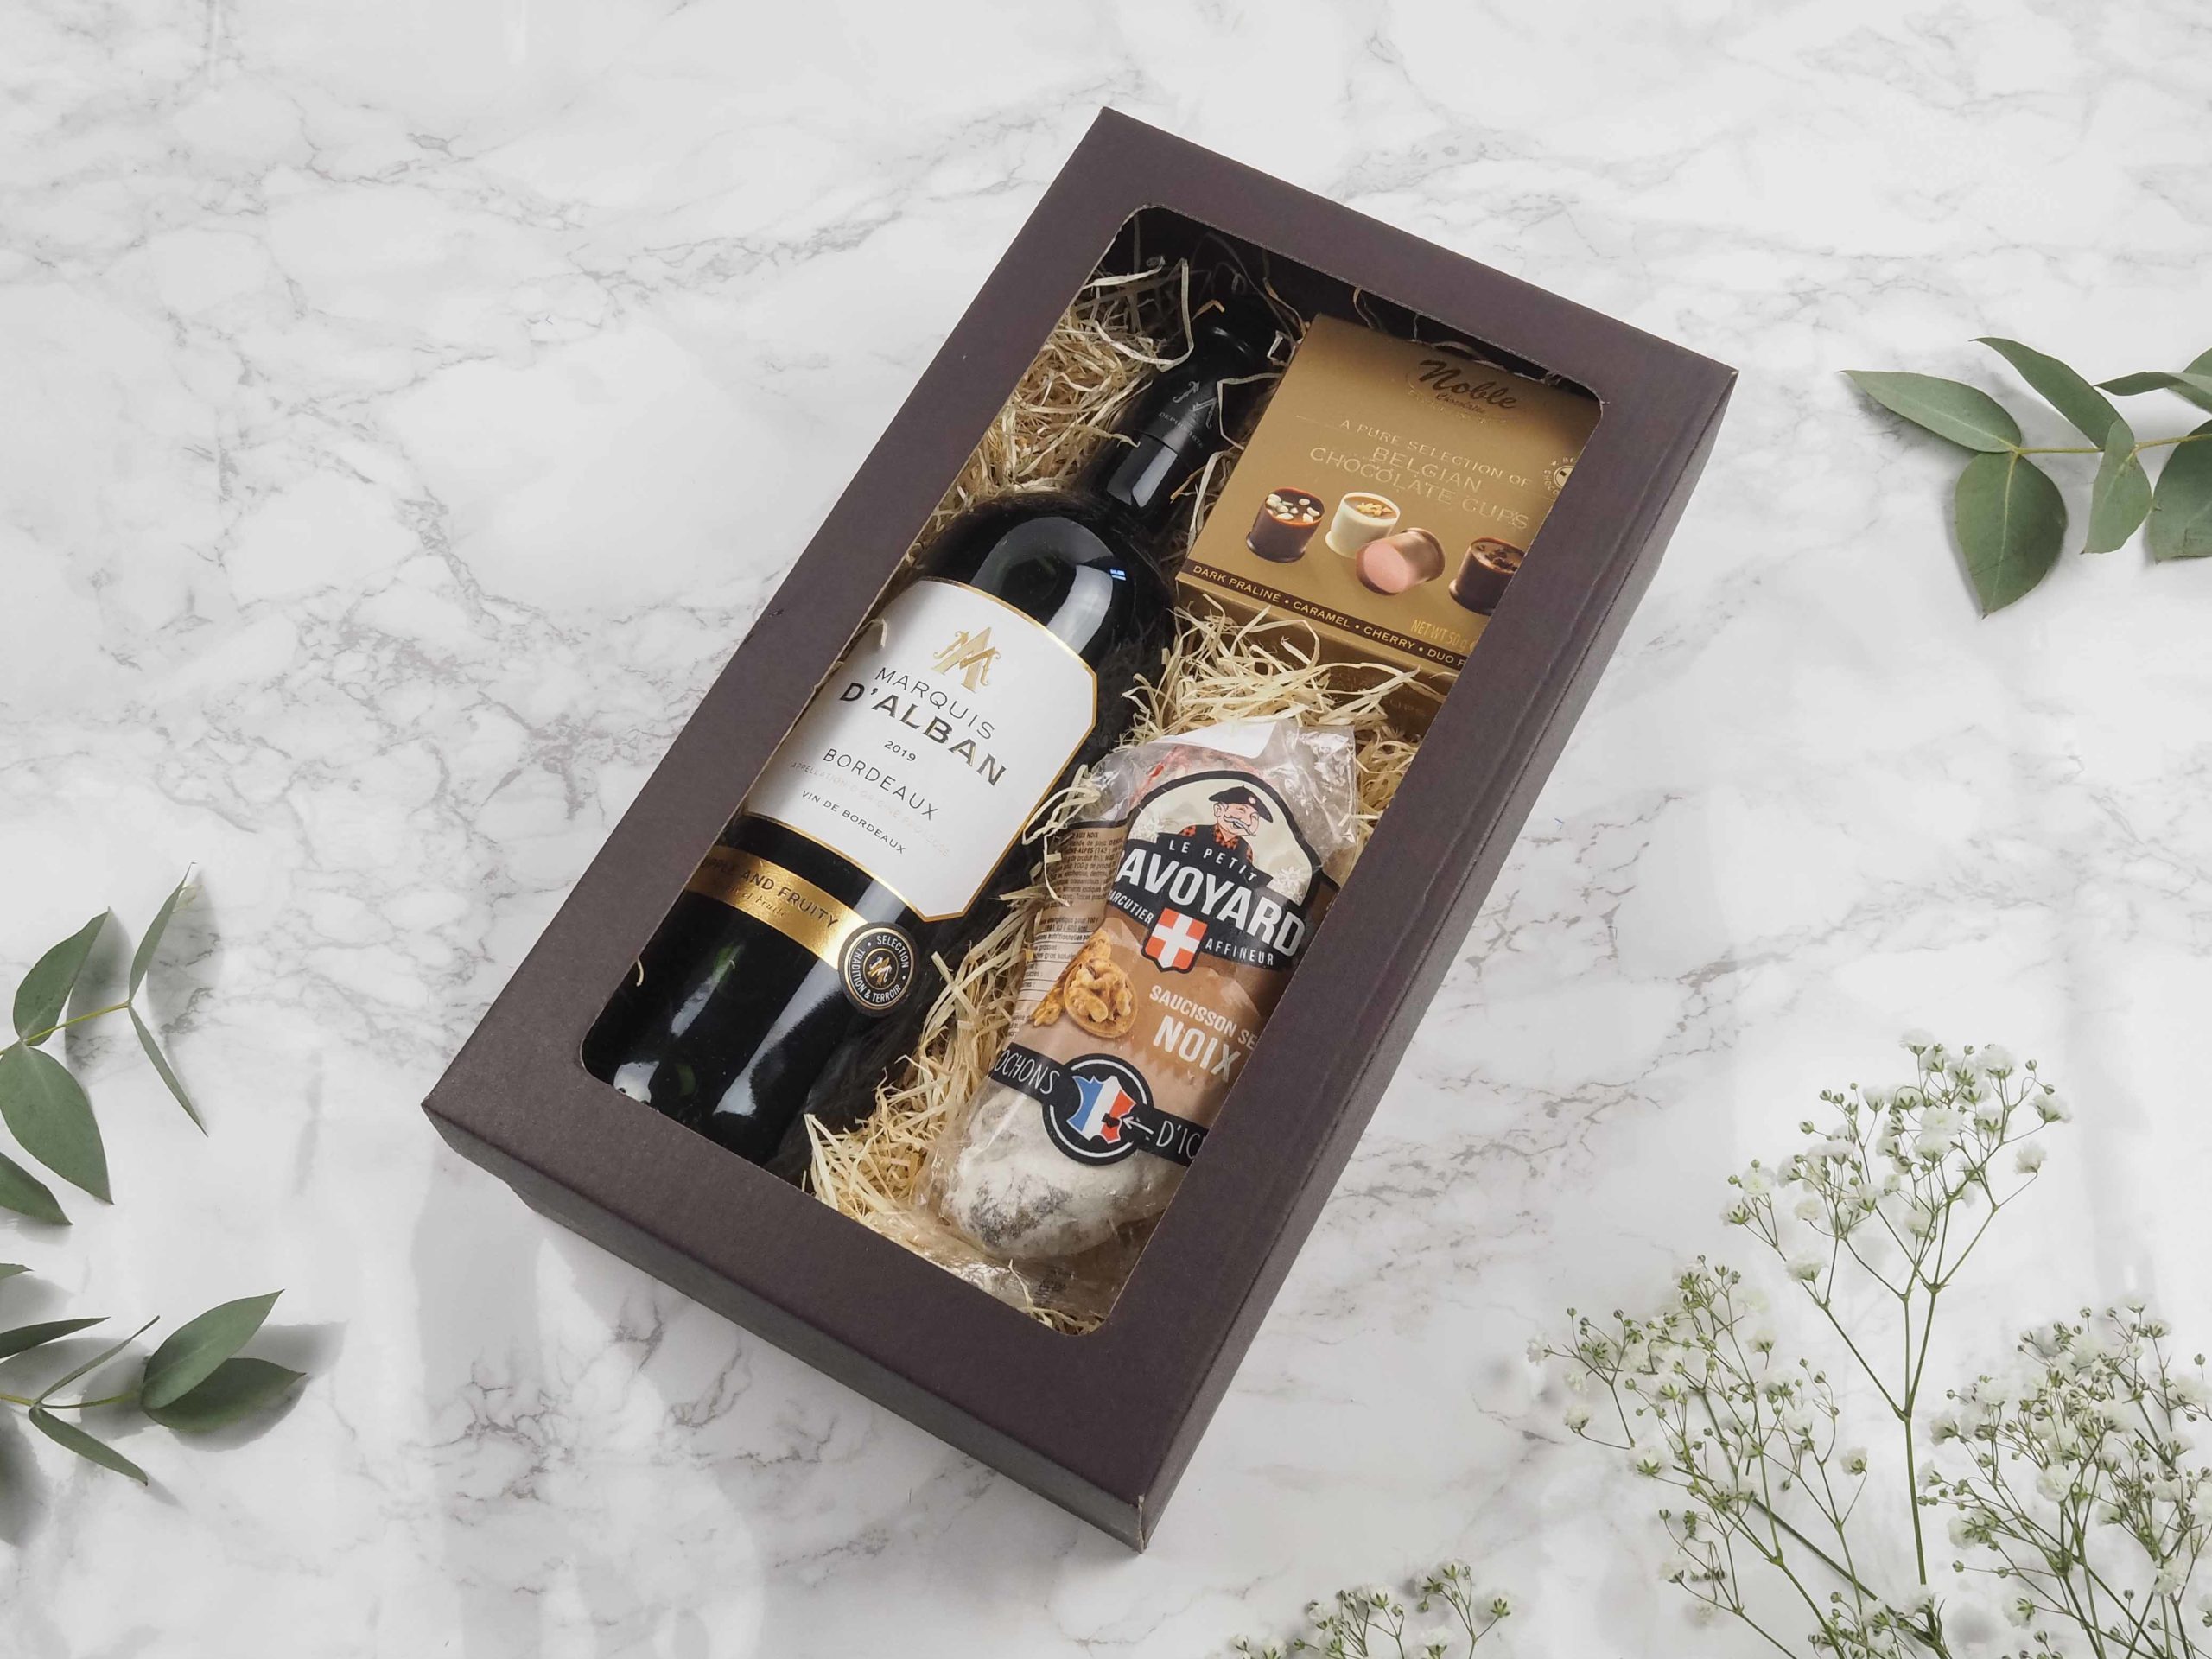 Dárková krabička v sobě ukrývá kvalitní červené víno Bordeaux, belgické čokoládové pralinky a francouzský savojský salámek s vlašskými ořechy. Všechny pochutiny jsou baleny v elegantní a ekologické papírové krabičce. Obdarujte s chutí malým degustačním zážitkem.